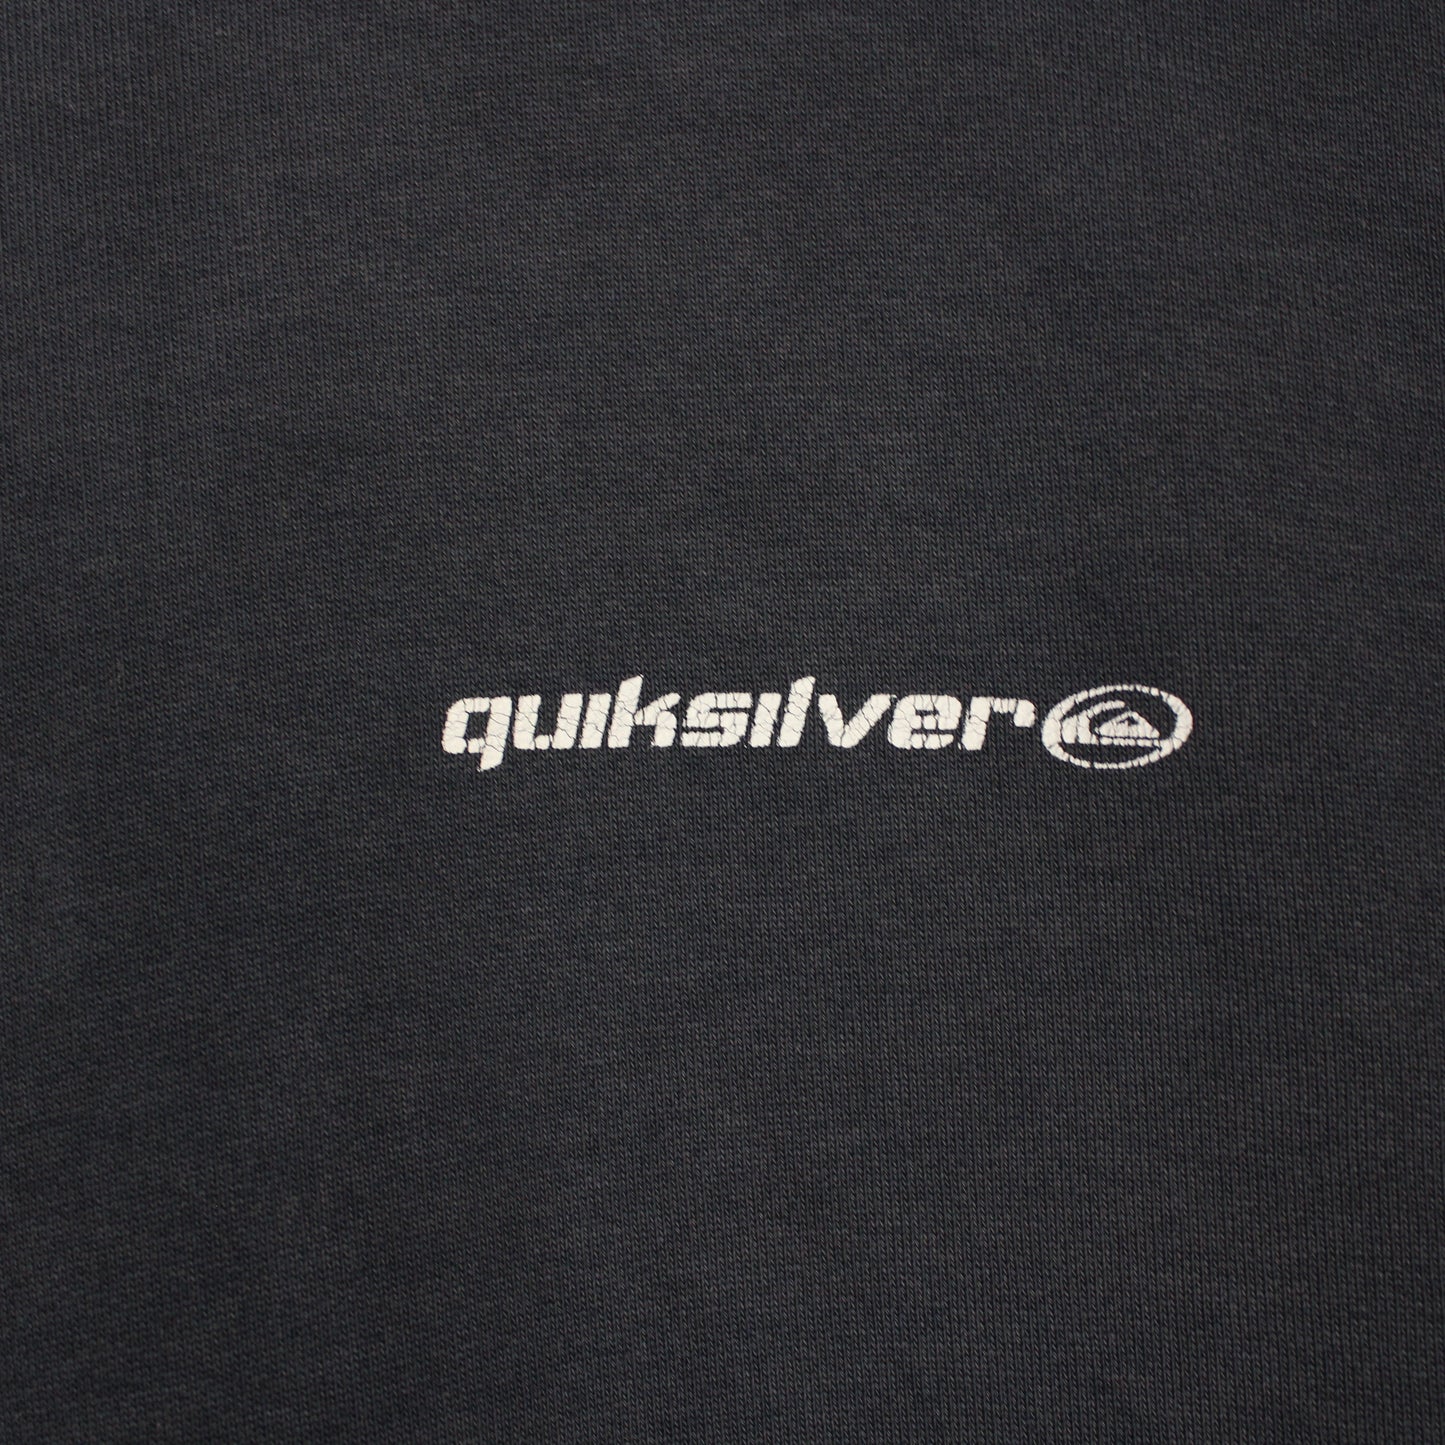 Vintage 90s Quiksilver Sweatshirt - L